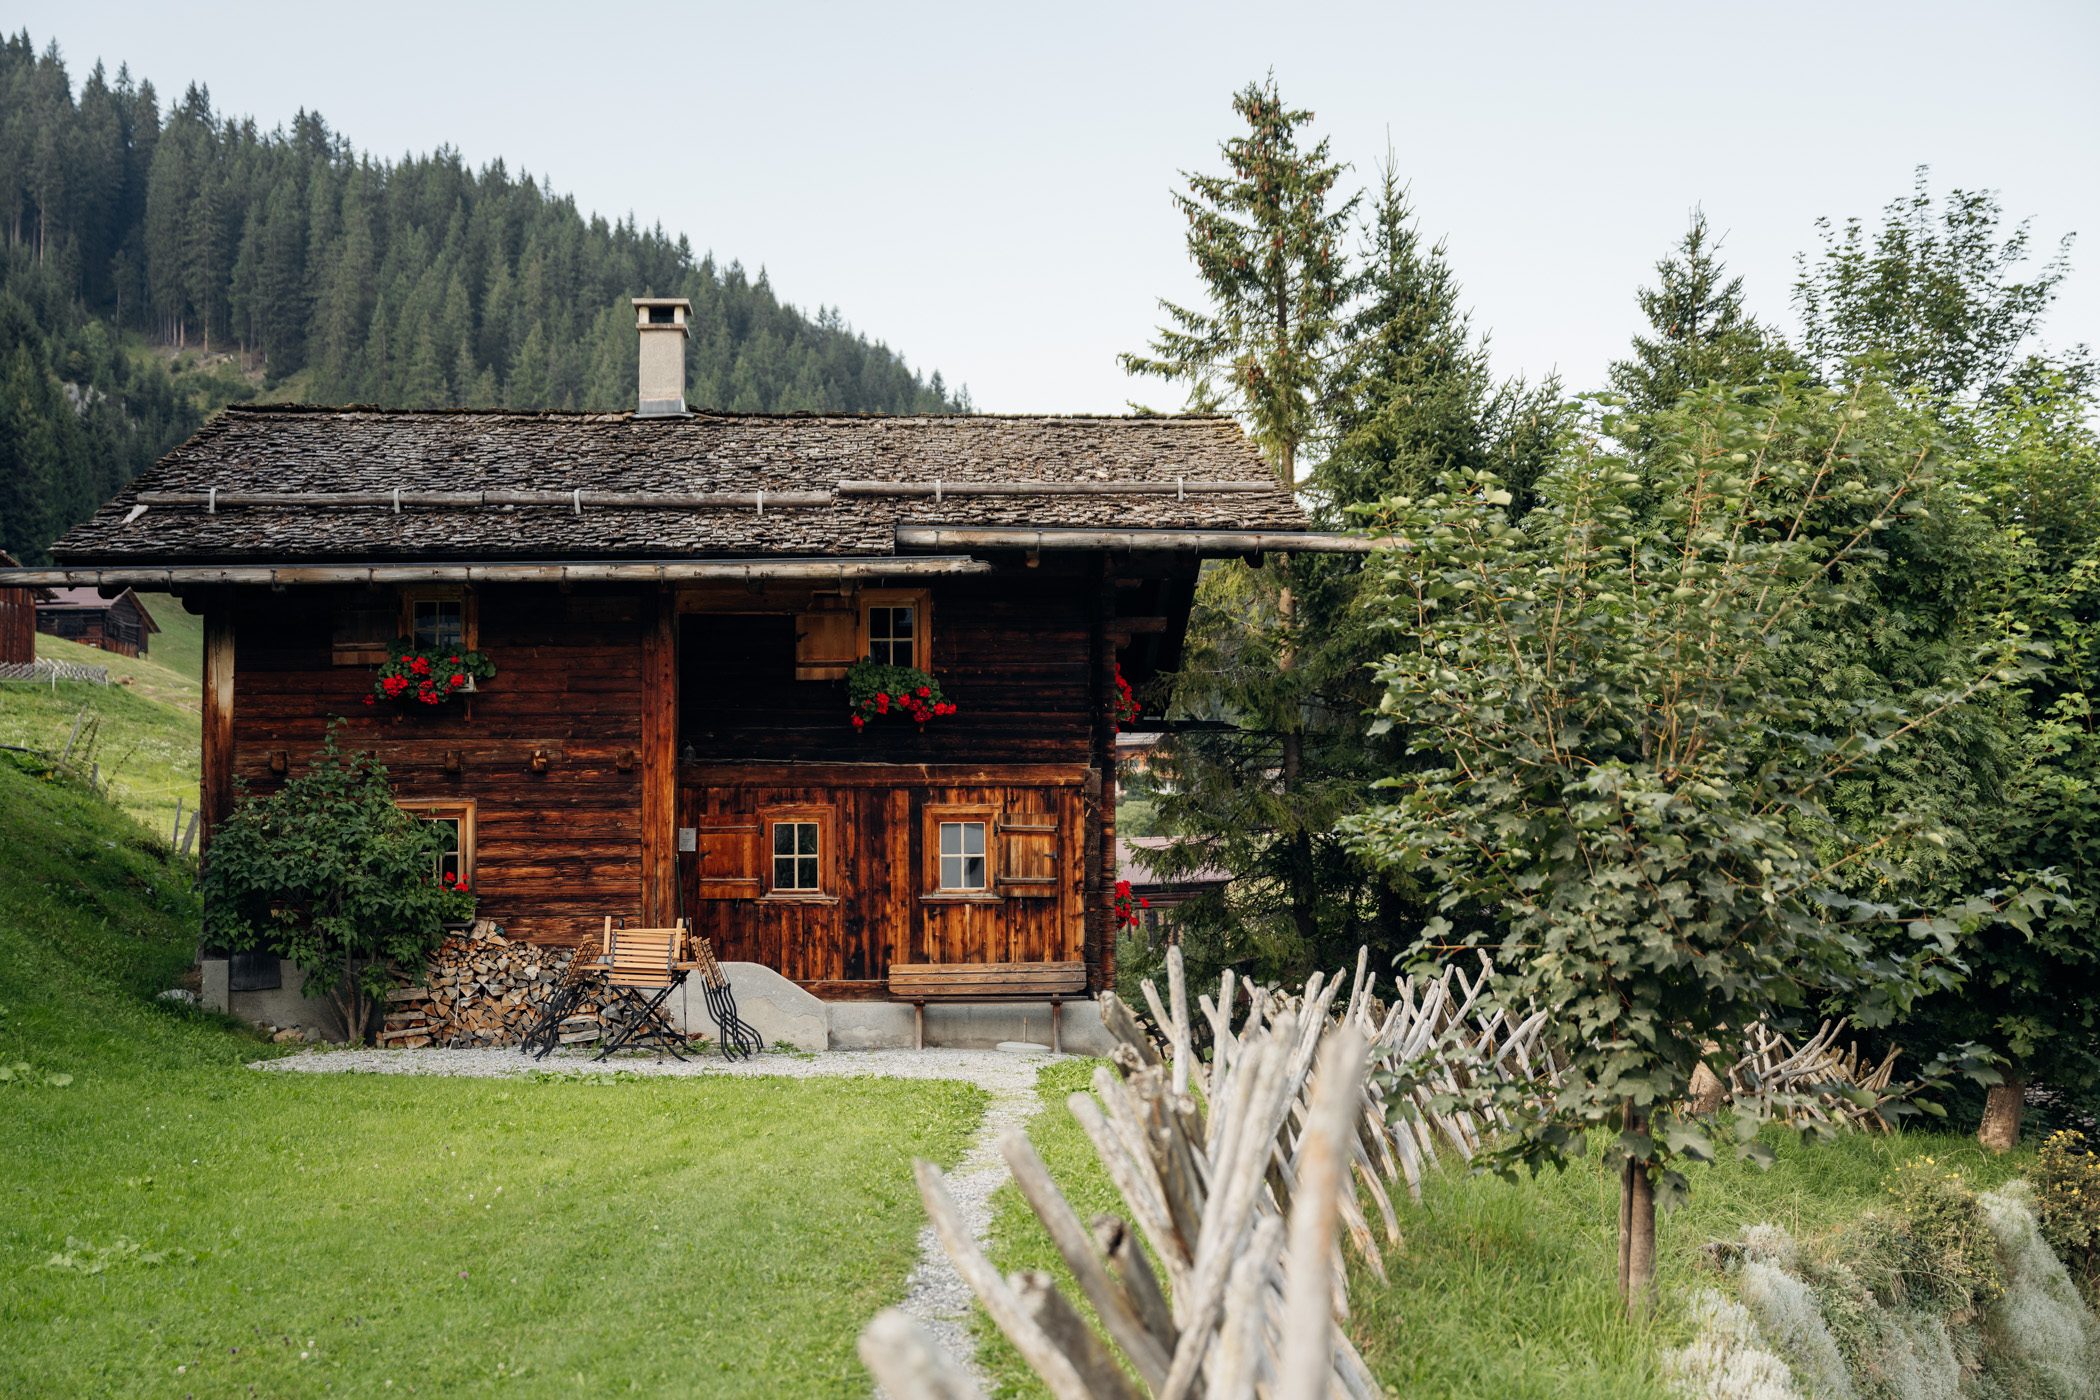 Offline Dorf, world's first offline village in Gargellen, Montafon, Vorarlberg, Austria